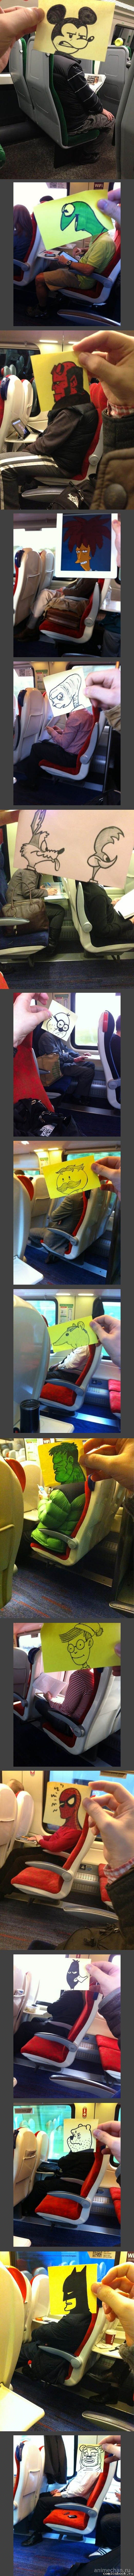 Когда очень скучно в поезде